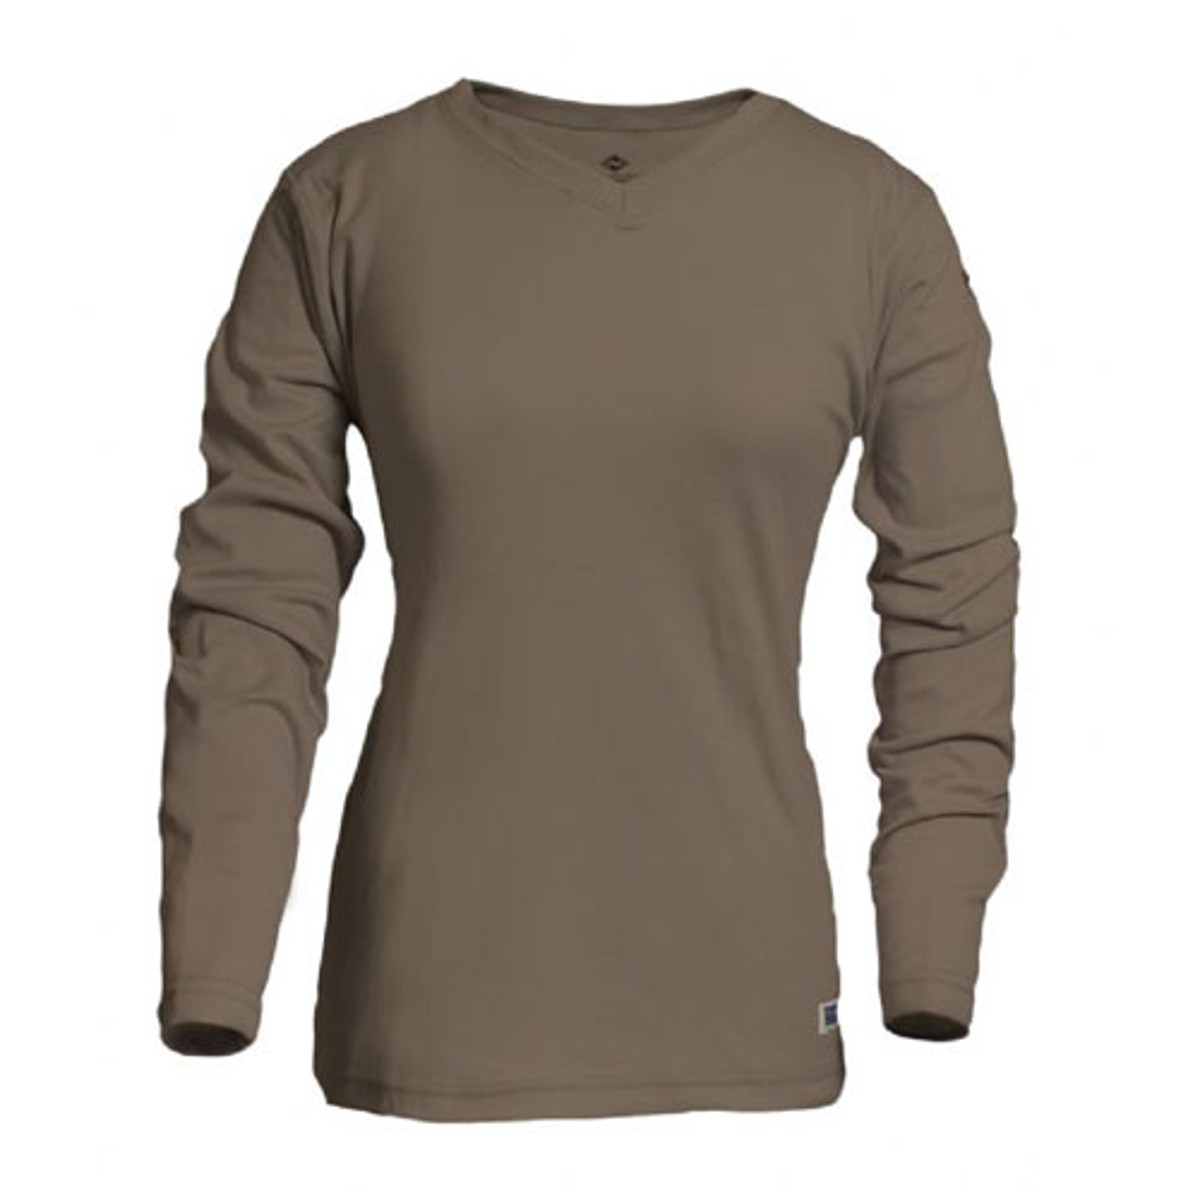 NSA Women's Classic Cotton FR T-Shirt in Tan